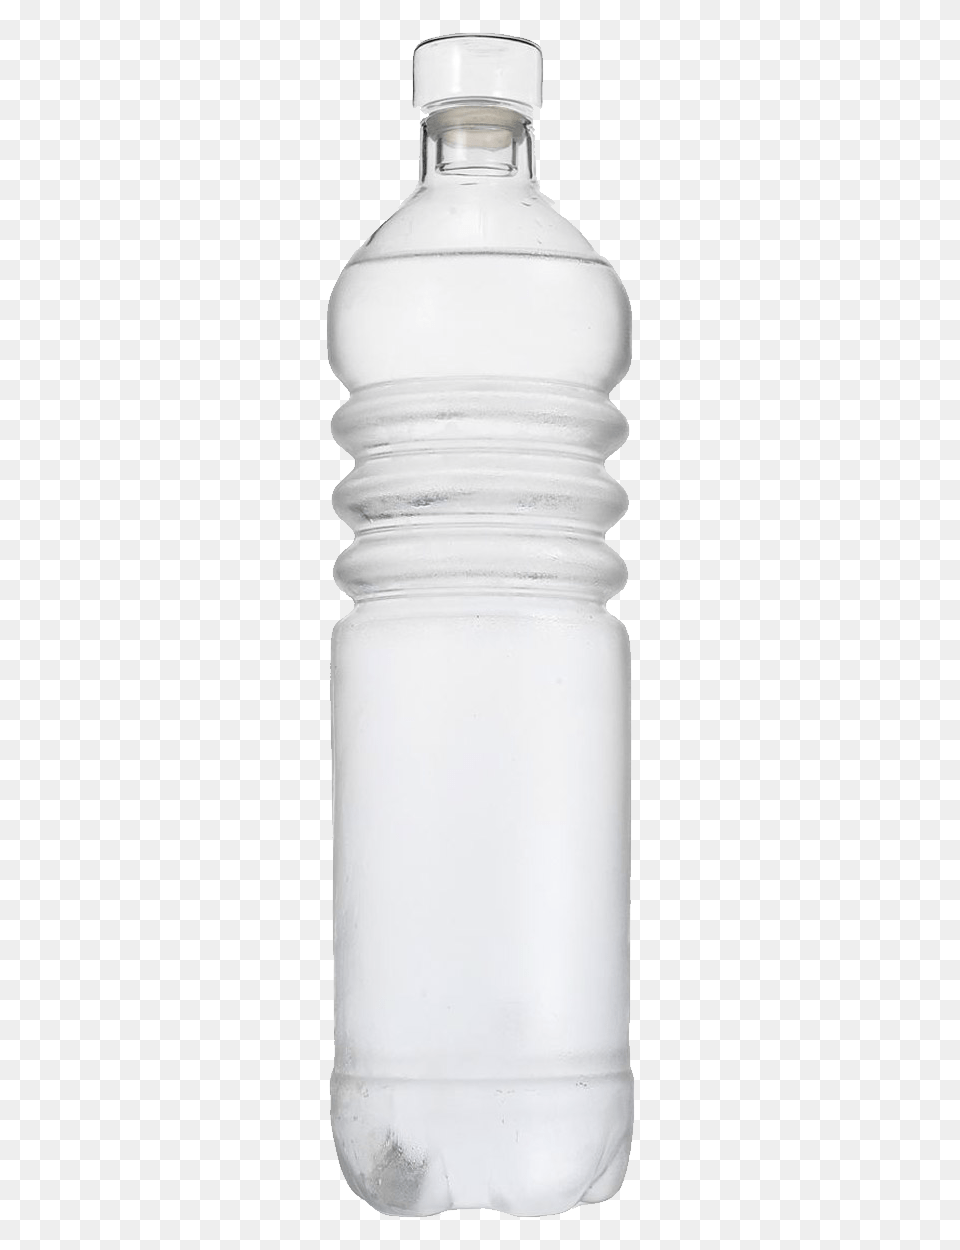 Bottle, Jar, Shaker, Water Bottle Png Image